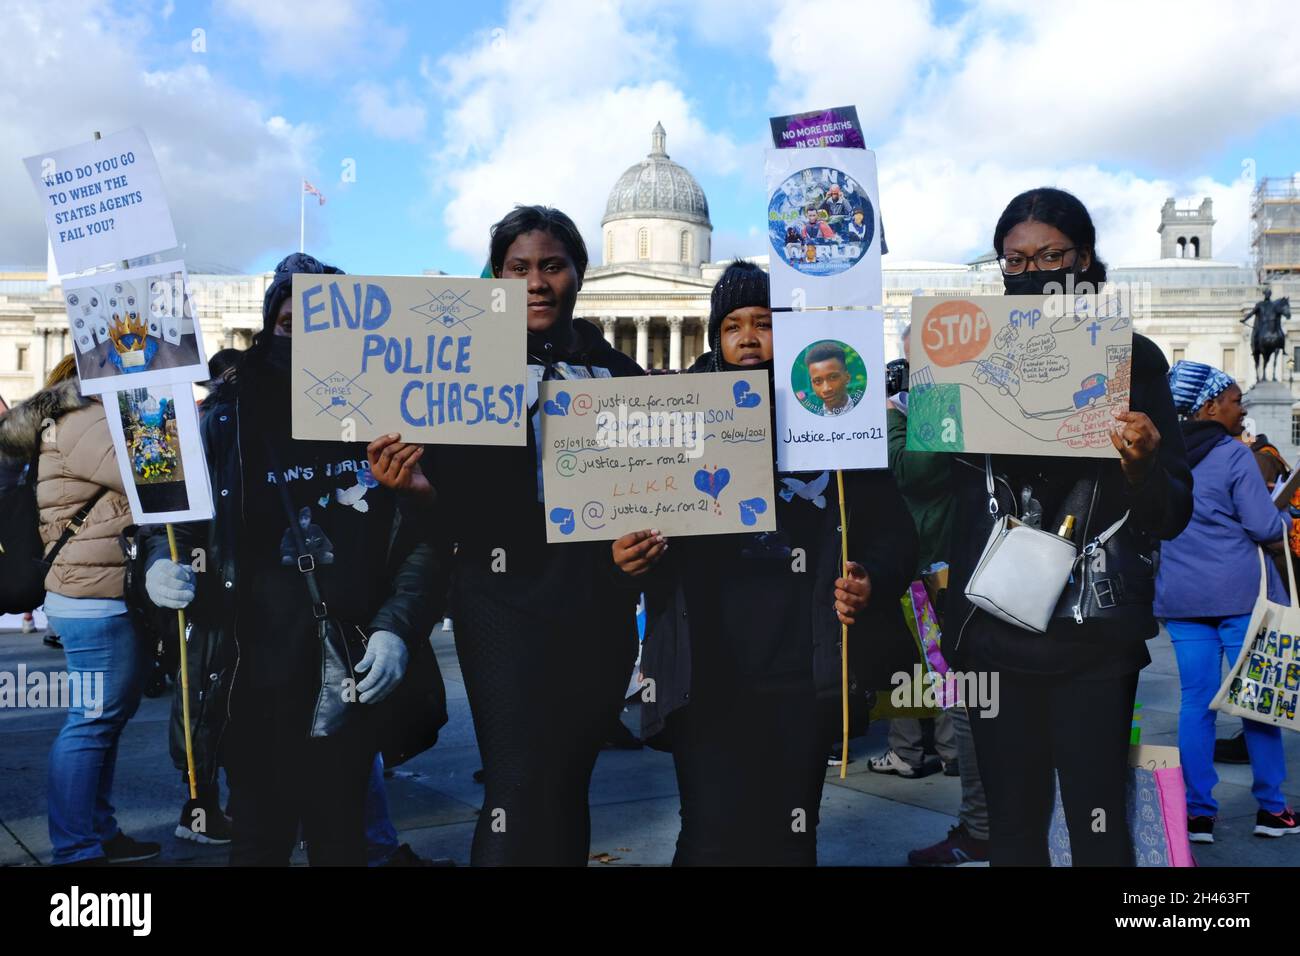 Londres, Royaume-Uni.La marche annuelle de la campagne des amis et de la famille Unis a lieu pour rappeler tous ceux qui sont morts en garde à vue et en soins psychiatriques. Banque D'Images